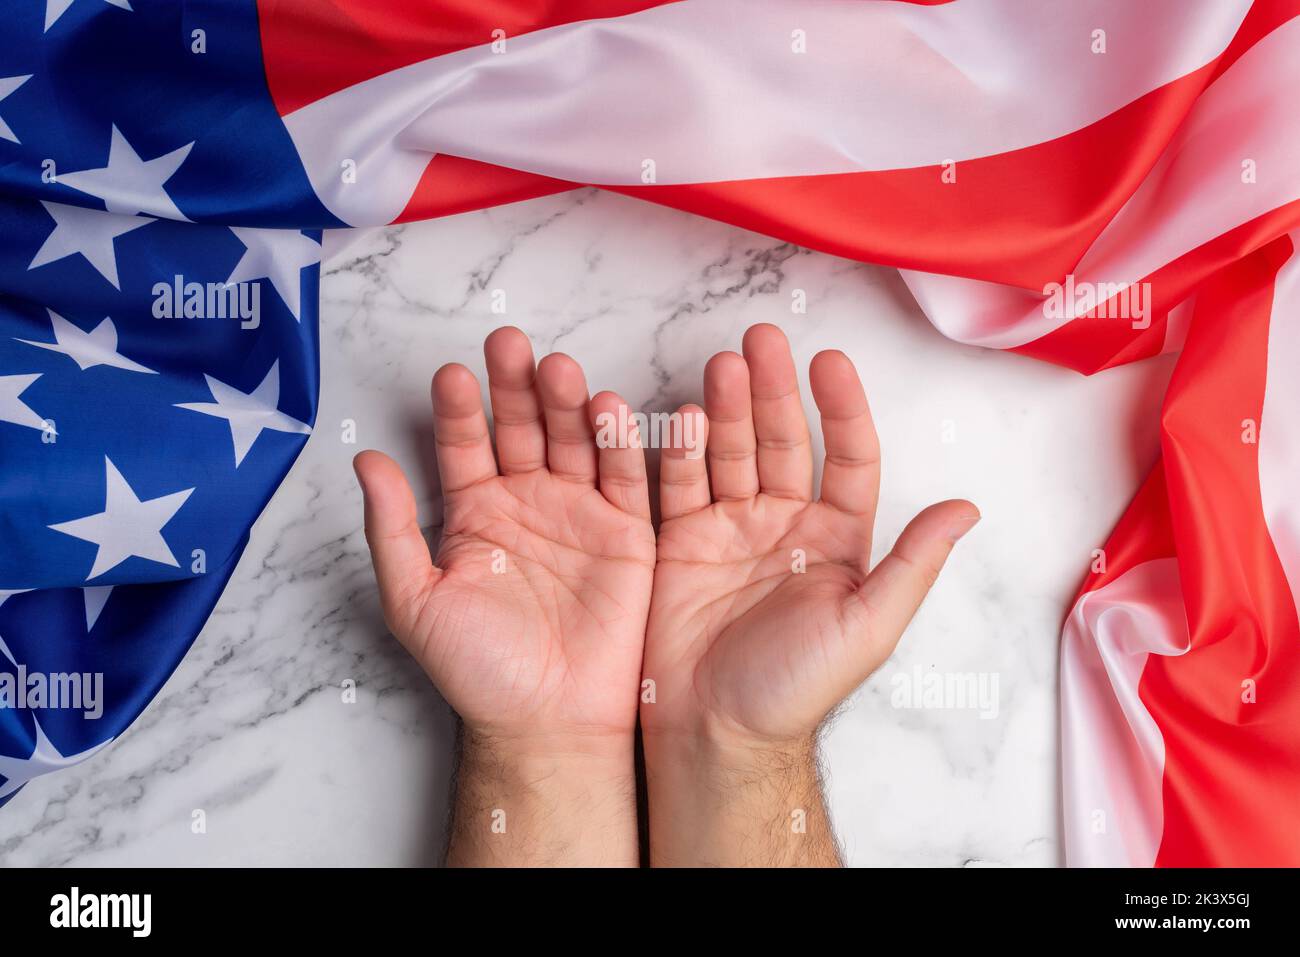 Hintergrund mit zwei offenen Händen, umgeben von der Flagge der Vereinigten Staaten von Amerika, die den Empfang und die gute Aufnahme dieses Landes symbolisiert. Kostenlos Stockfoto